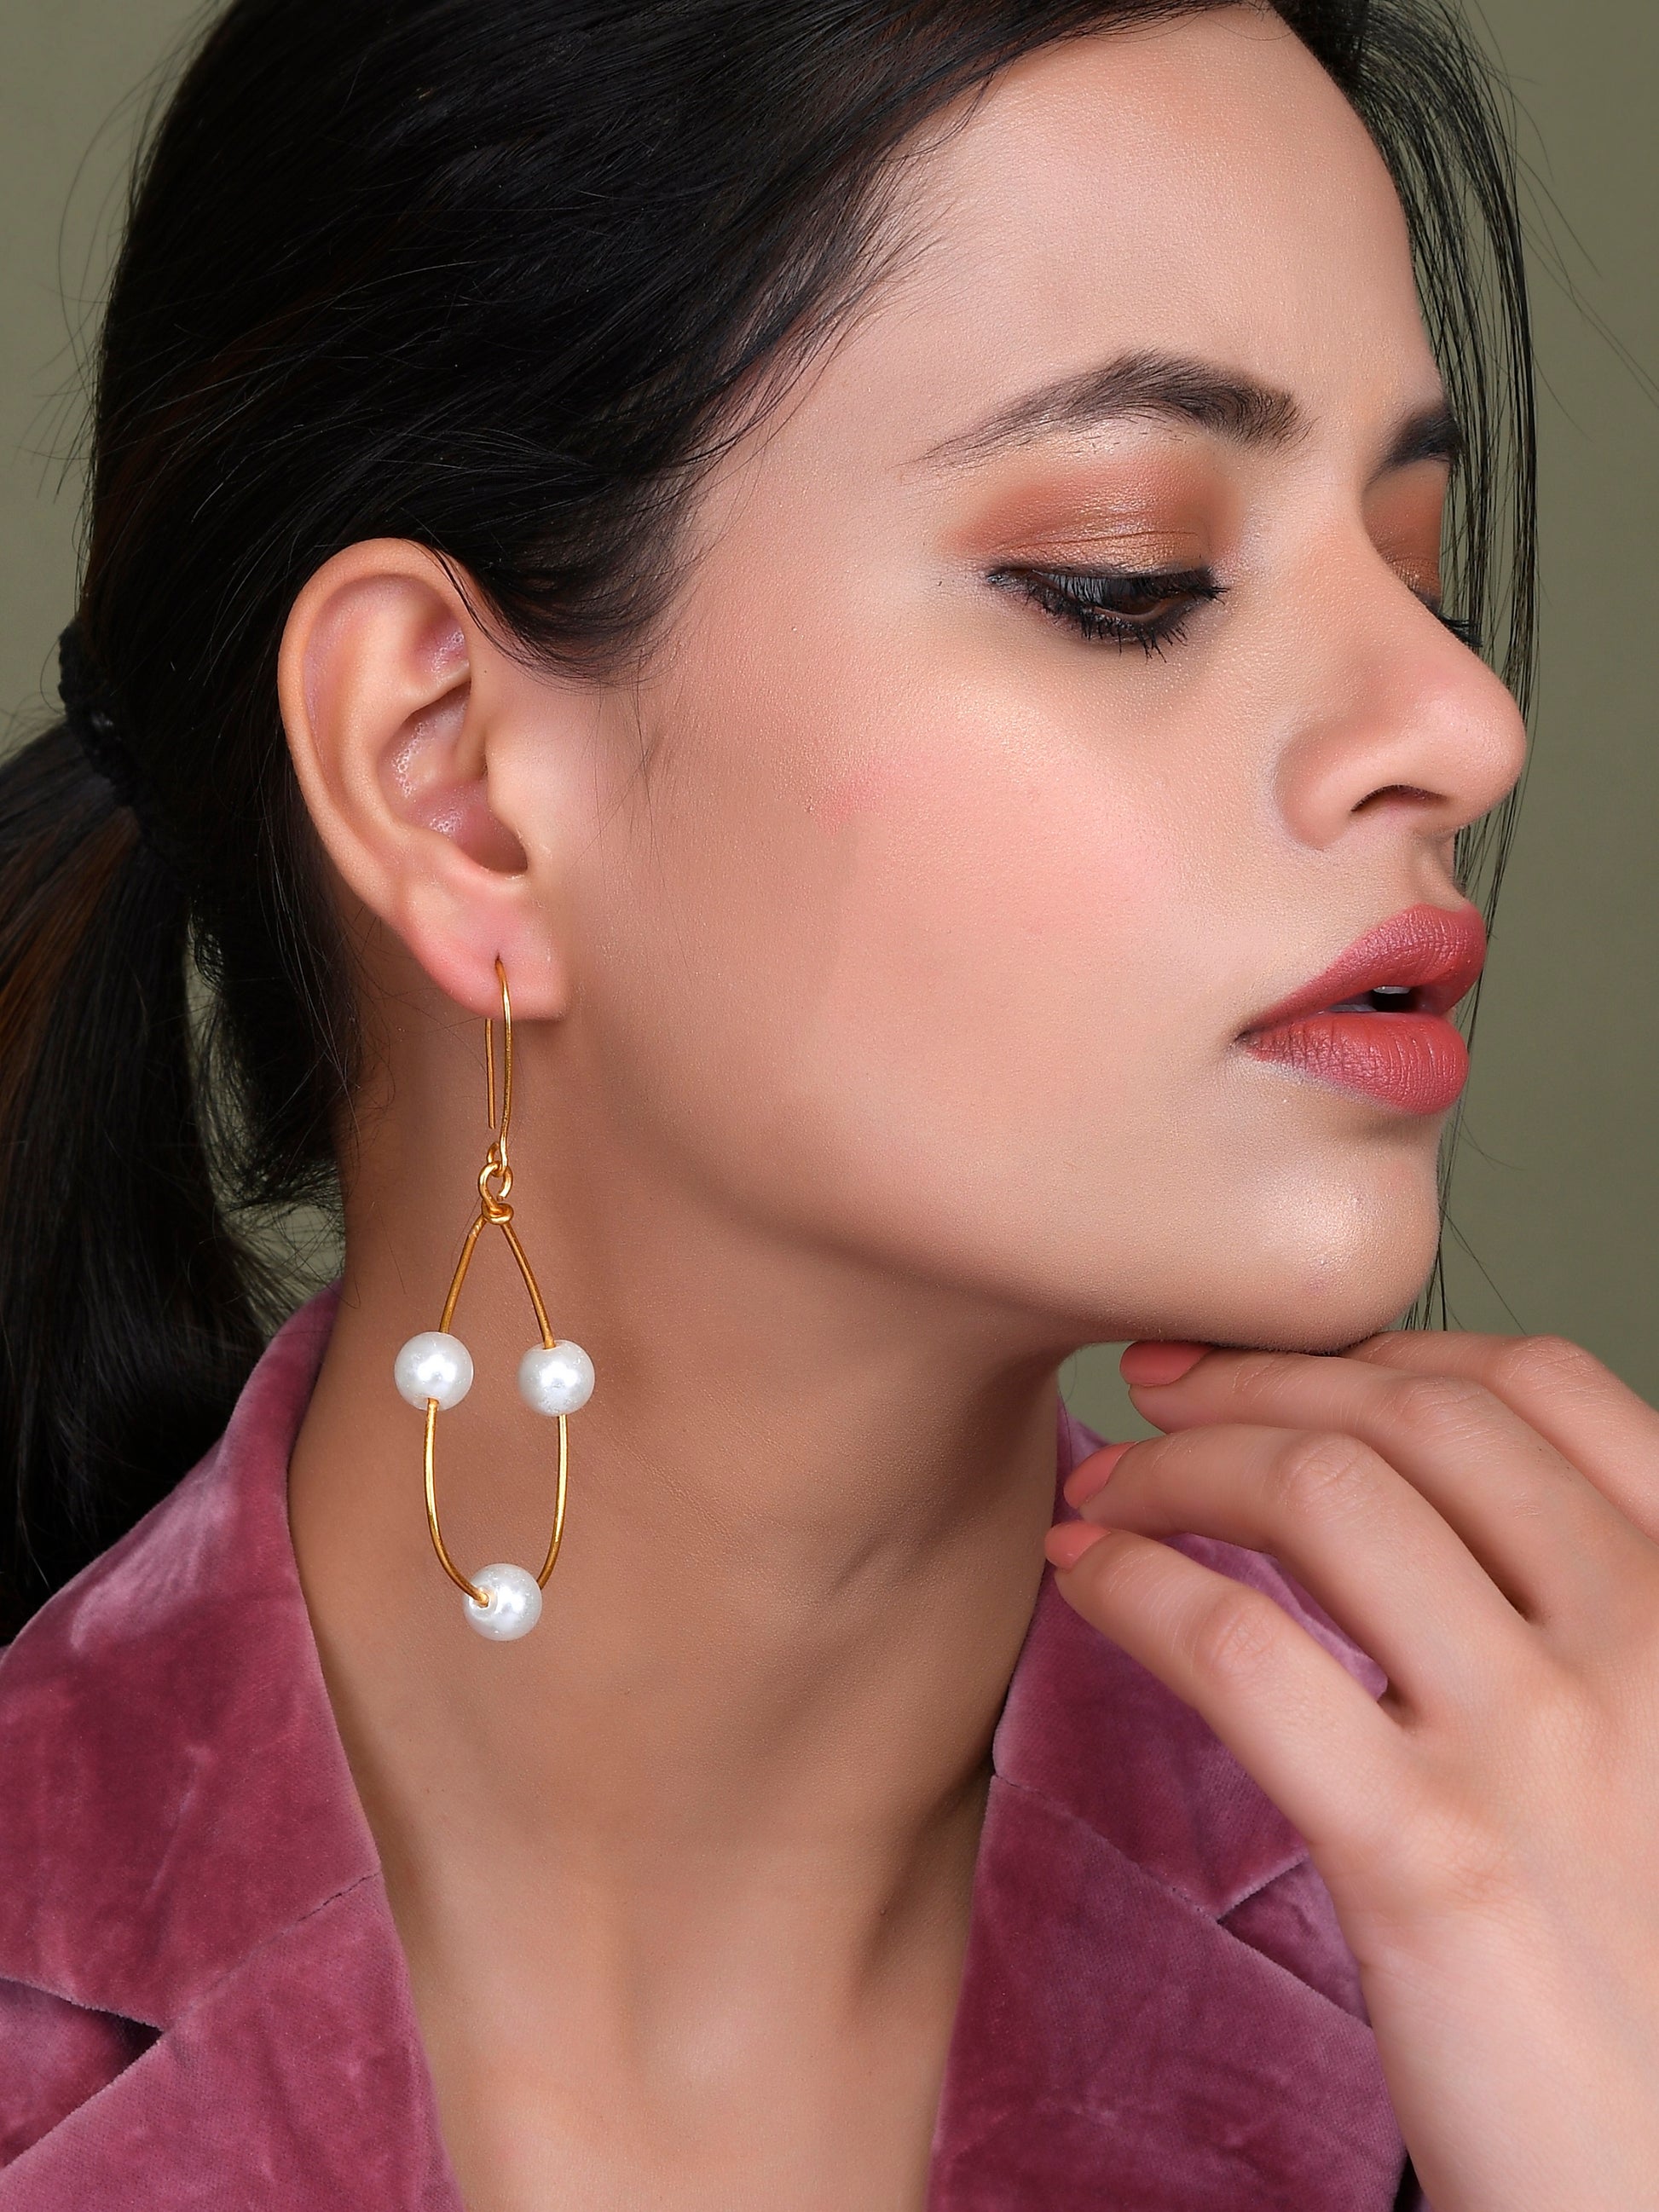 Gold Pearl Dangler Earrings for Girls - Earrings for Women Online